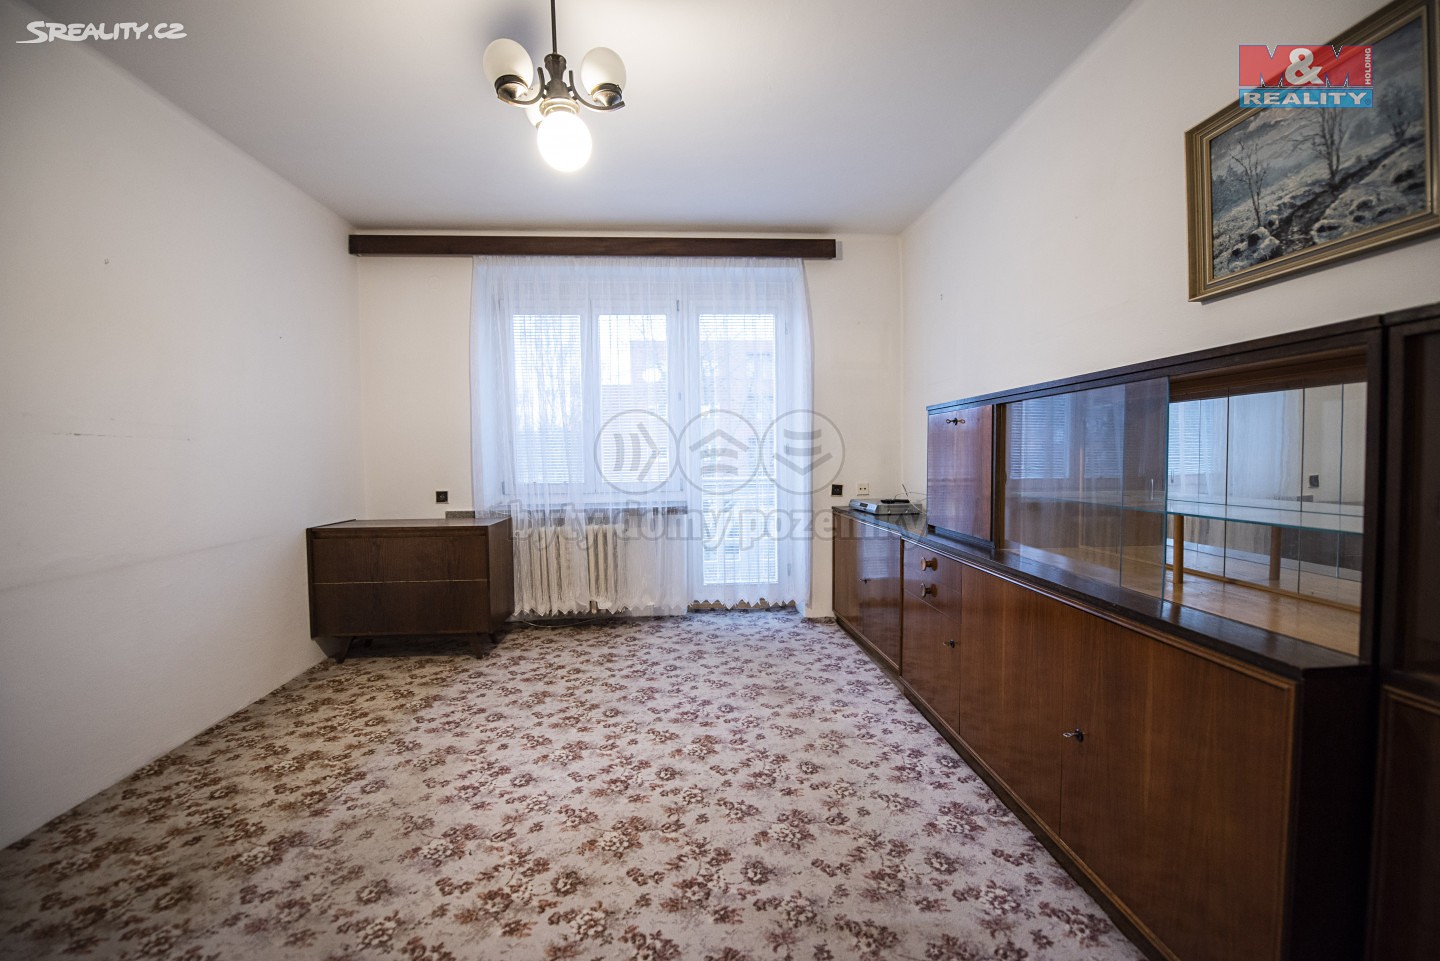 Pronájem bytu 2+1 57 m², Labská kotlina, Hradec Králové